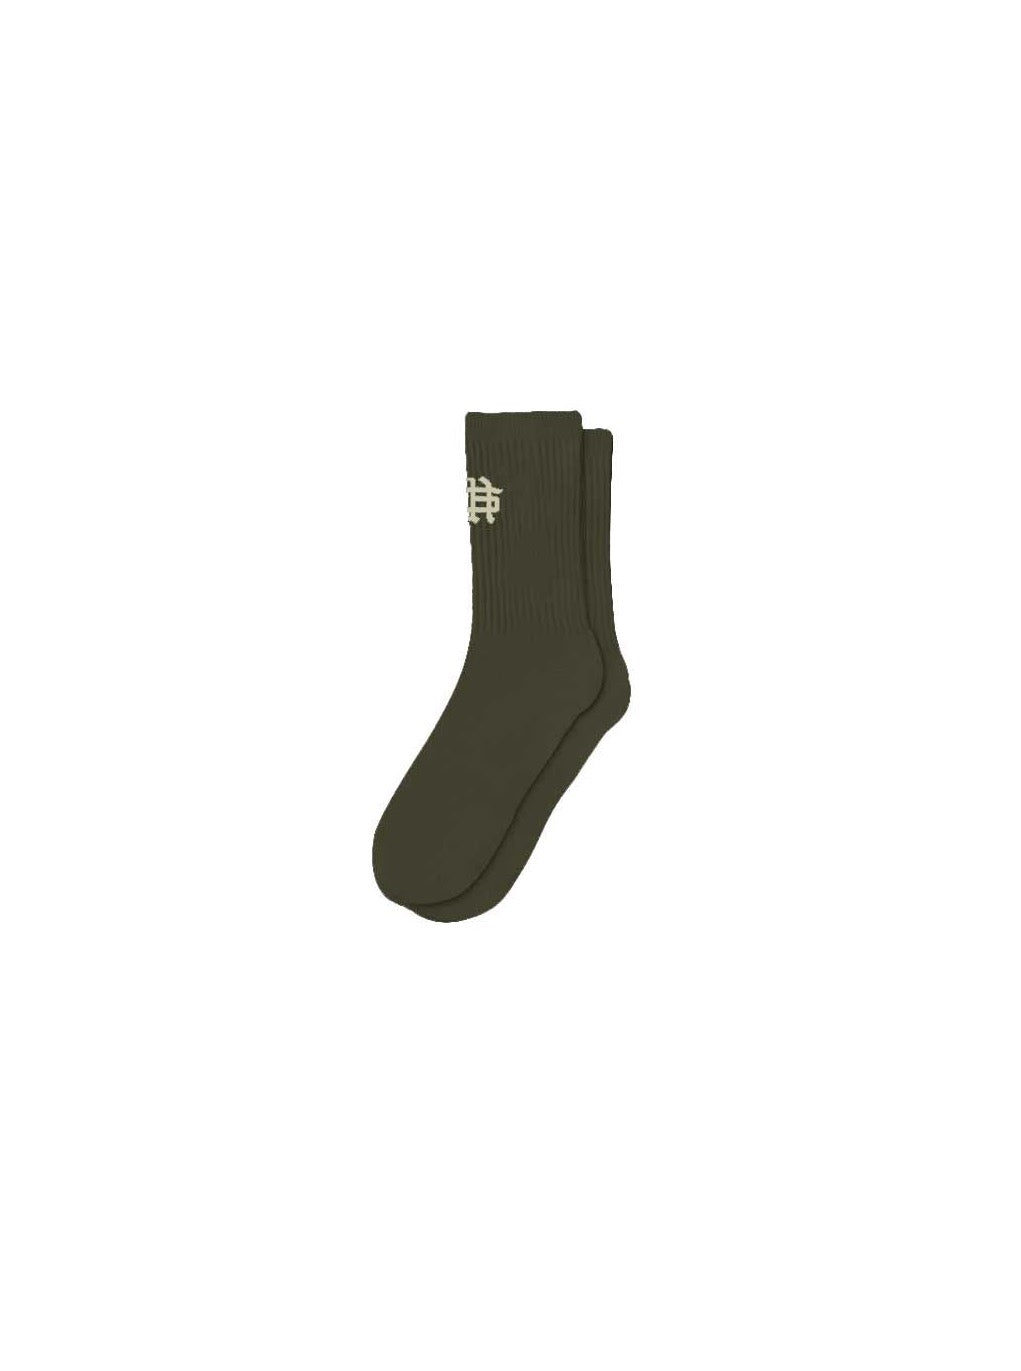 Såle et. Al Revølutiøn Sock : Militærgrønn / Sand